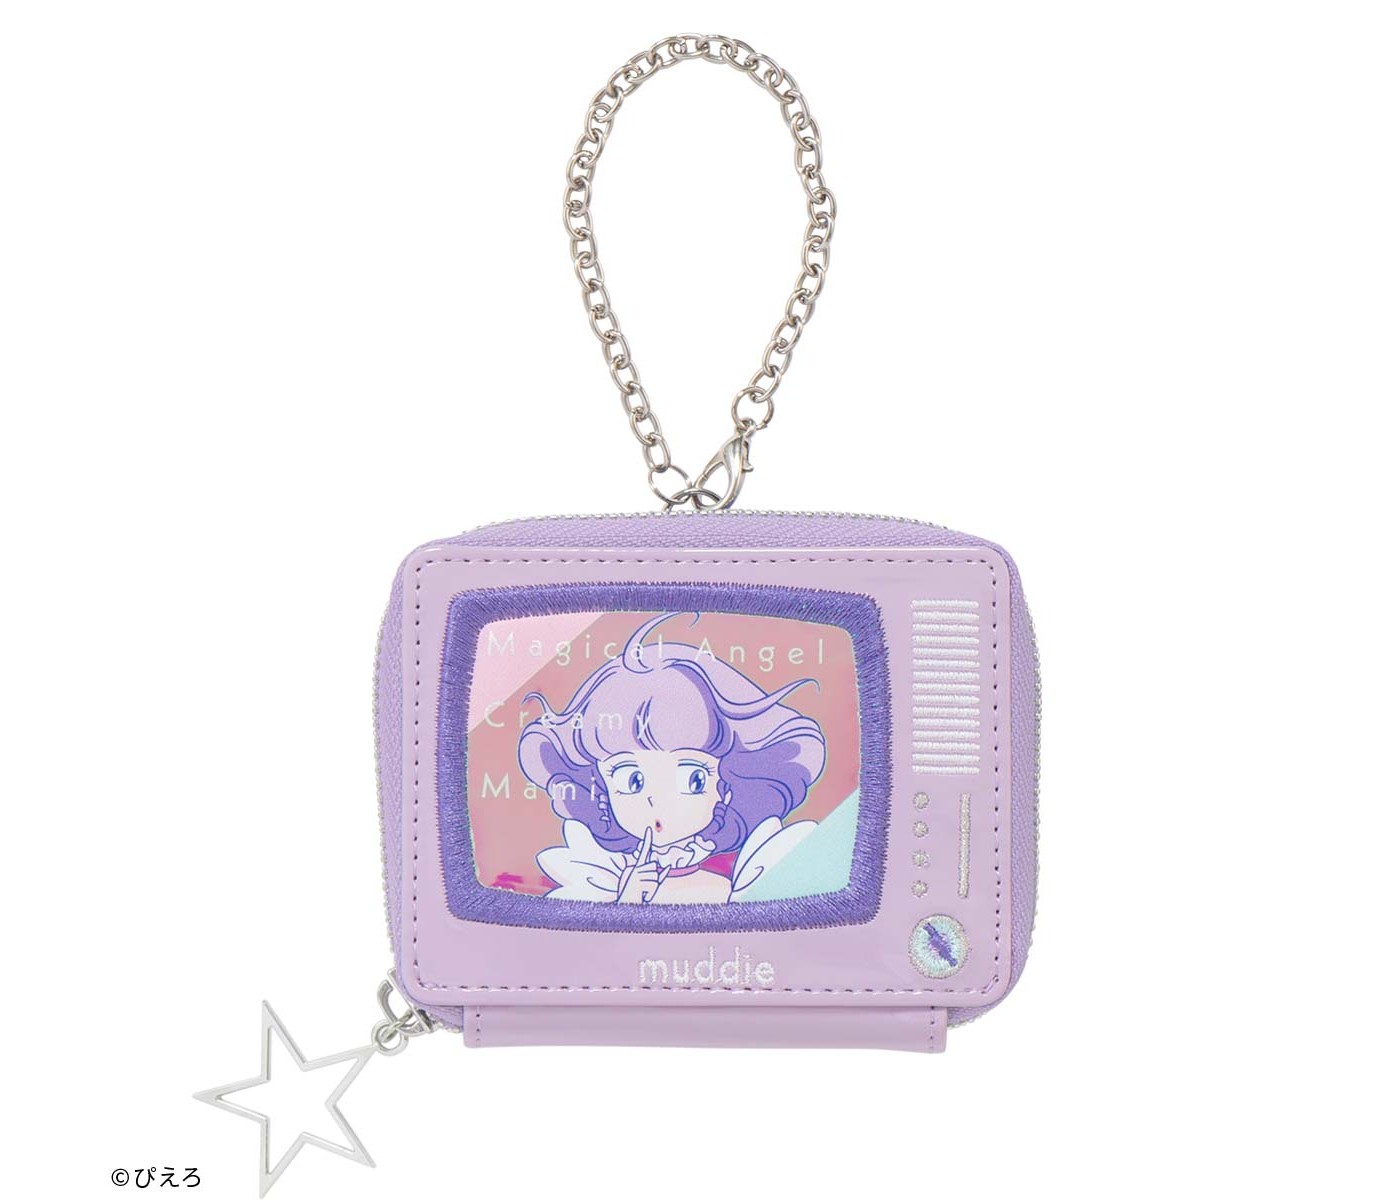 クリィミーマミ』の雑貨がレトロキュート☆ ラジカセ型のお財布 